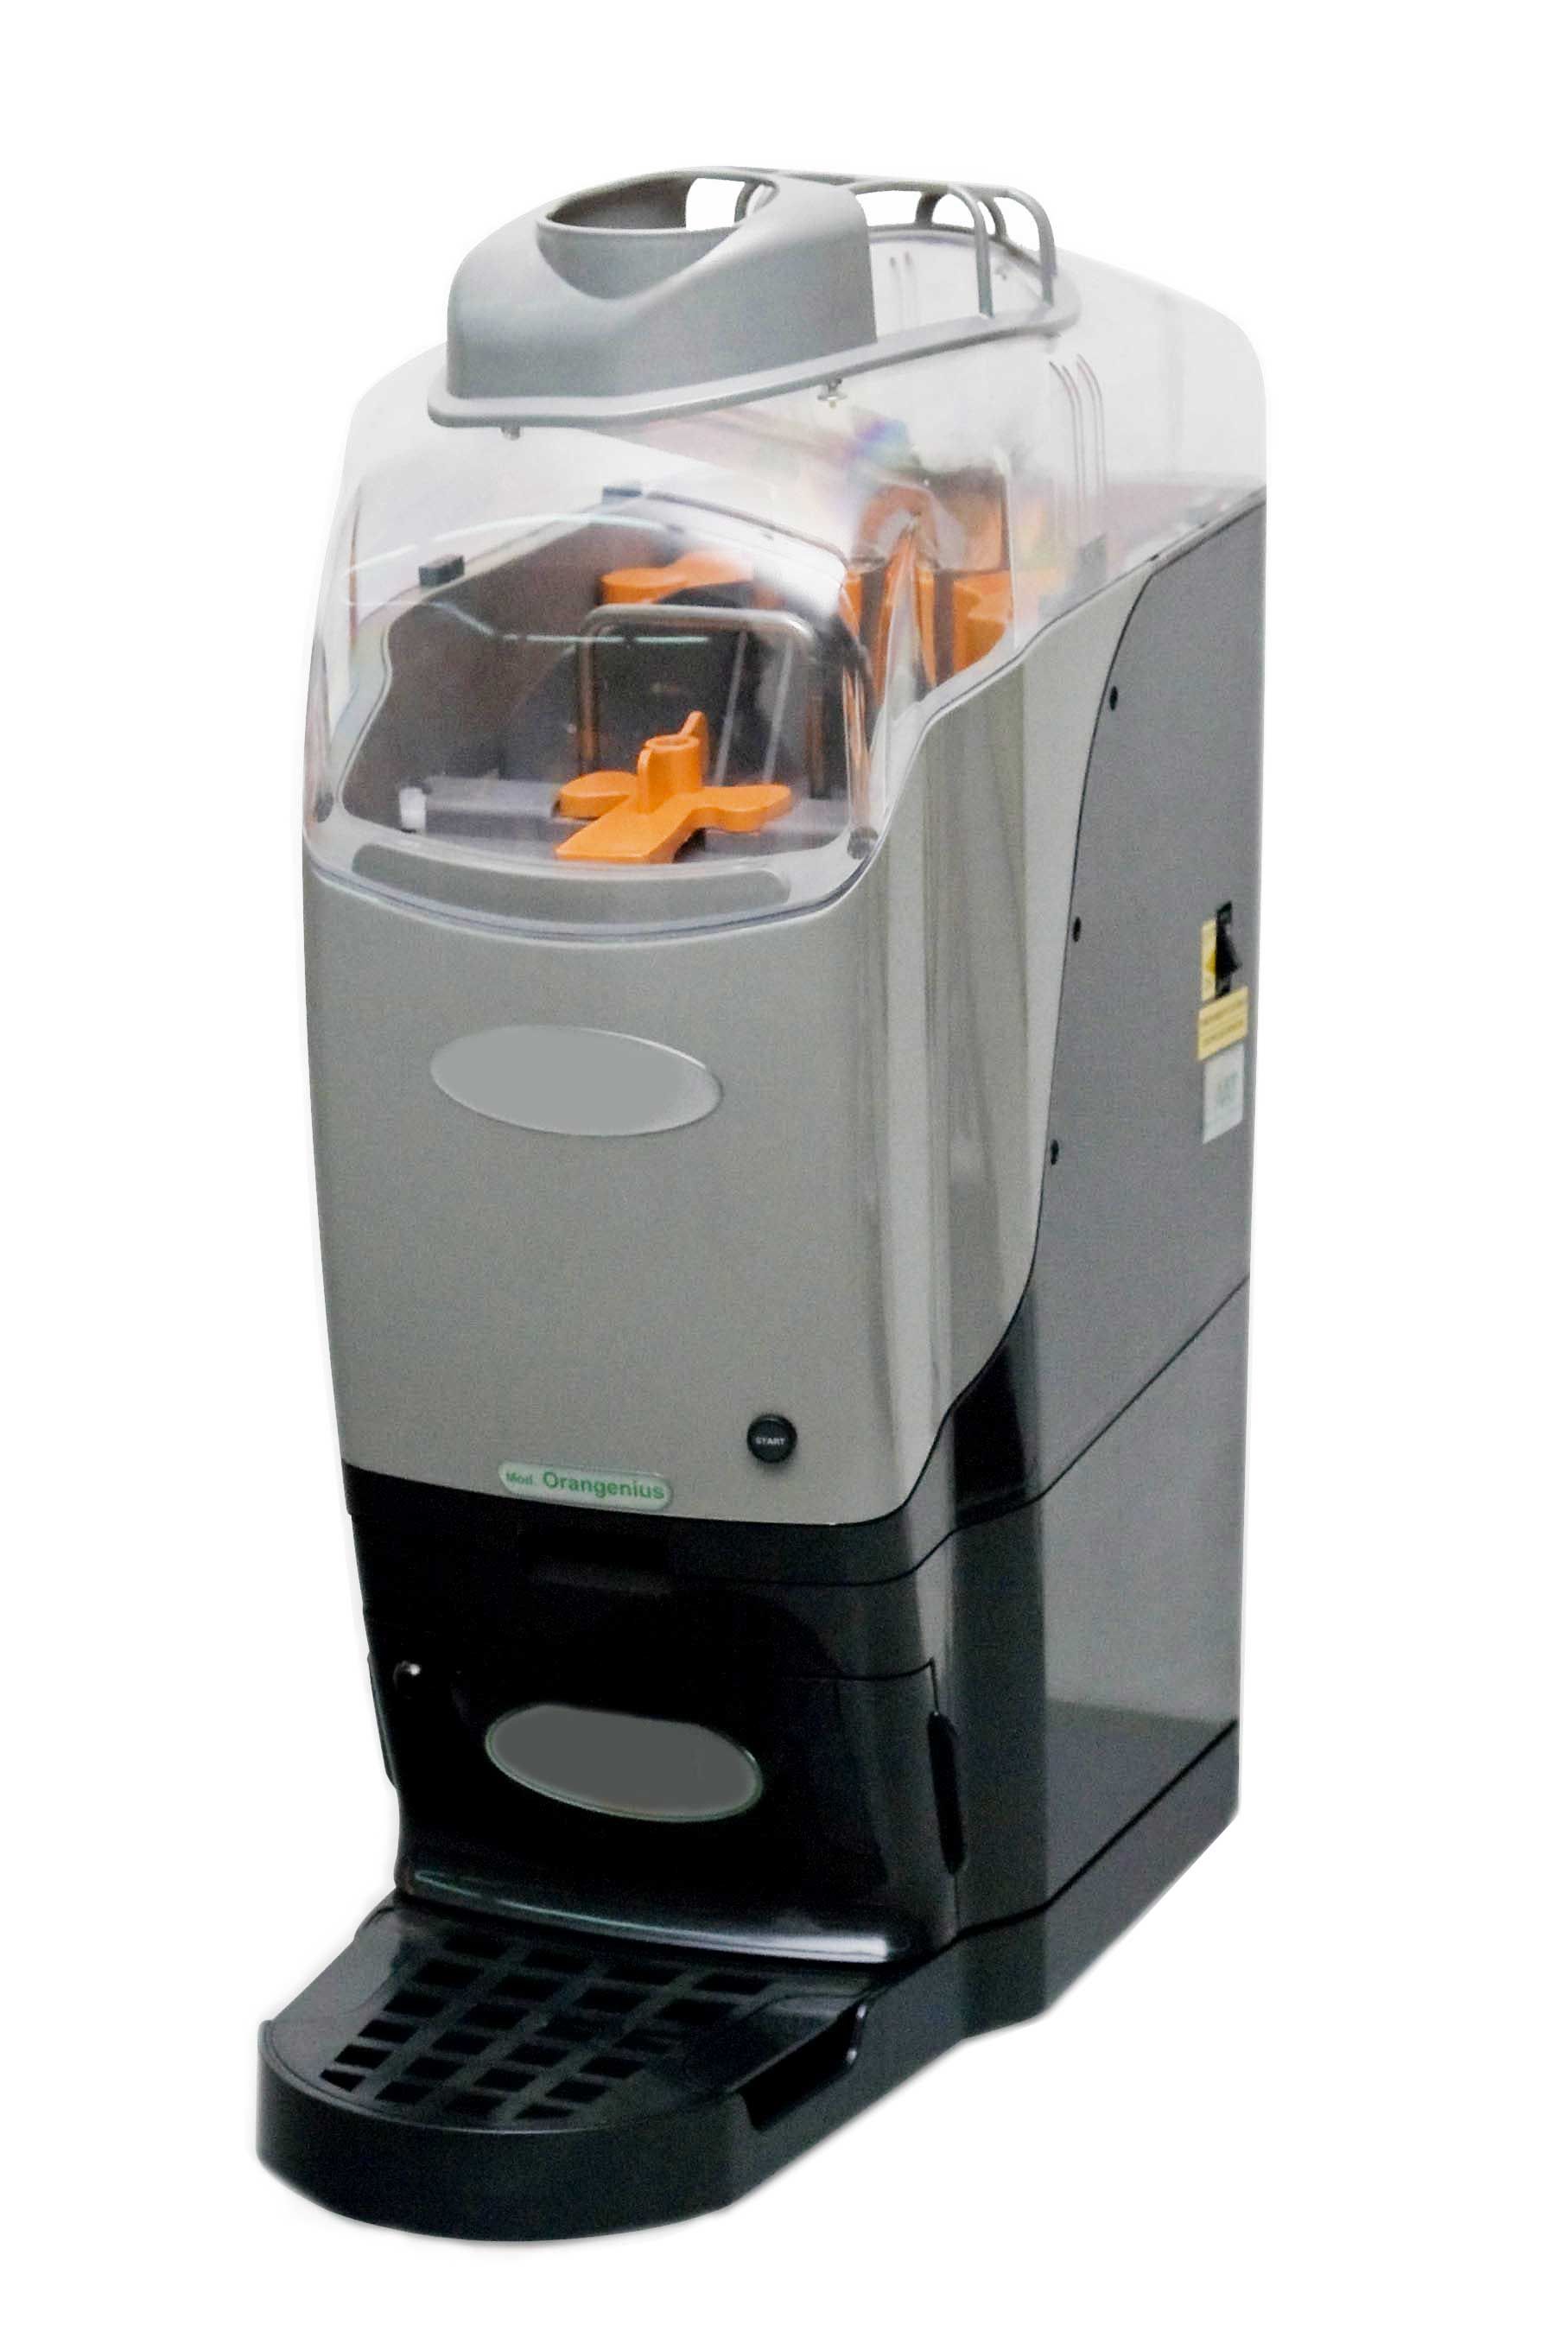 BL55 - Spremiagrumi elettrico automatico da banco